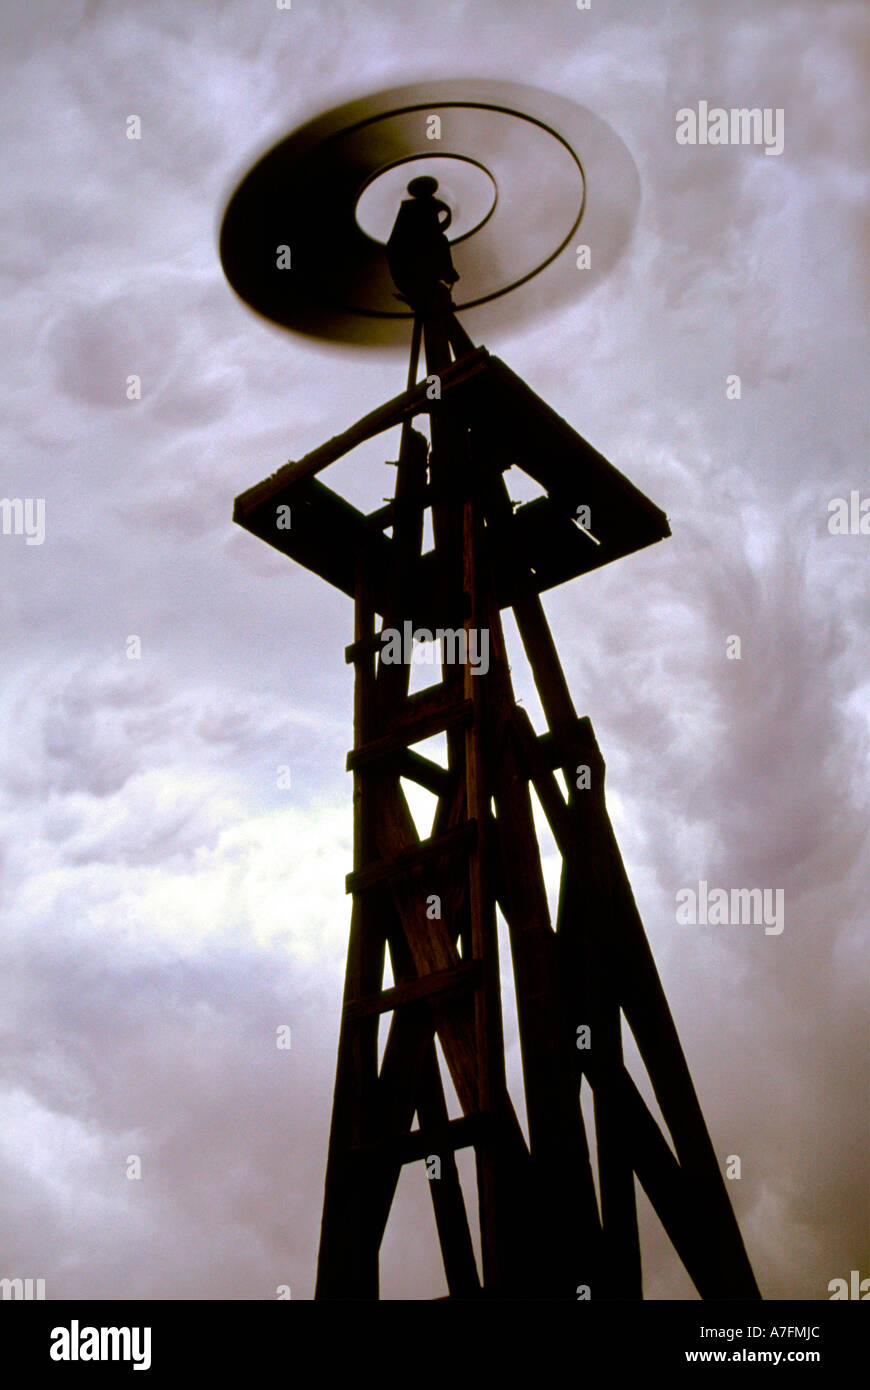 Eine herannahende Gewitter in den östlichen Ebenen von Colorado schafft eine unheimliche und surreale Szene mit diesem Silhouette Windmühle Stockfoto